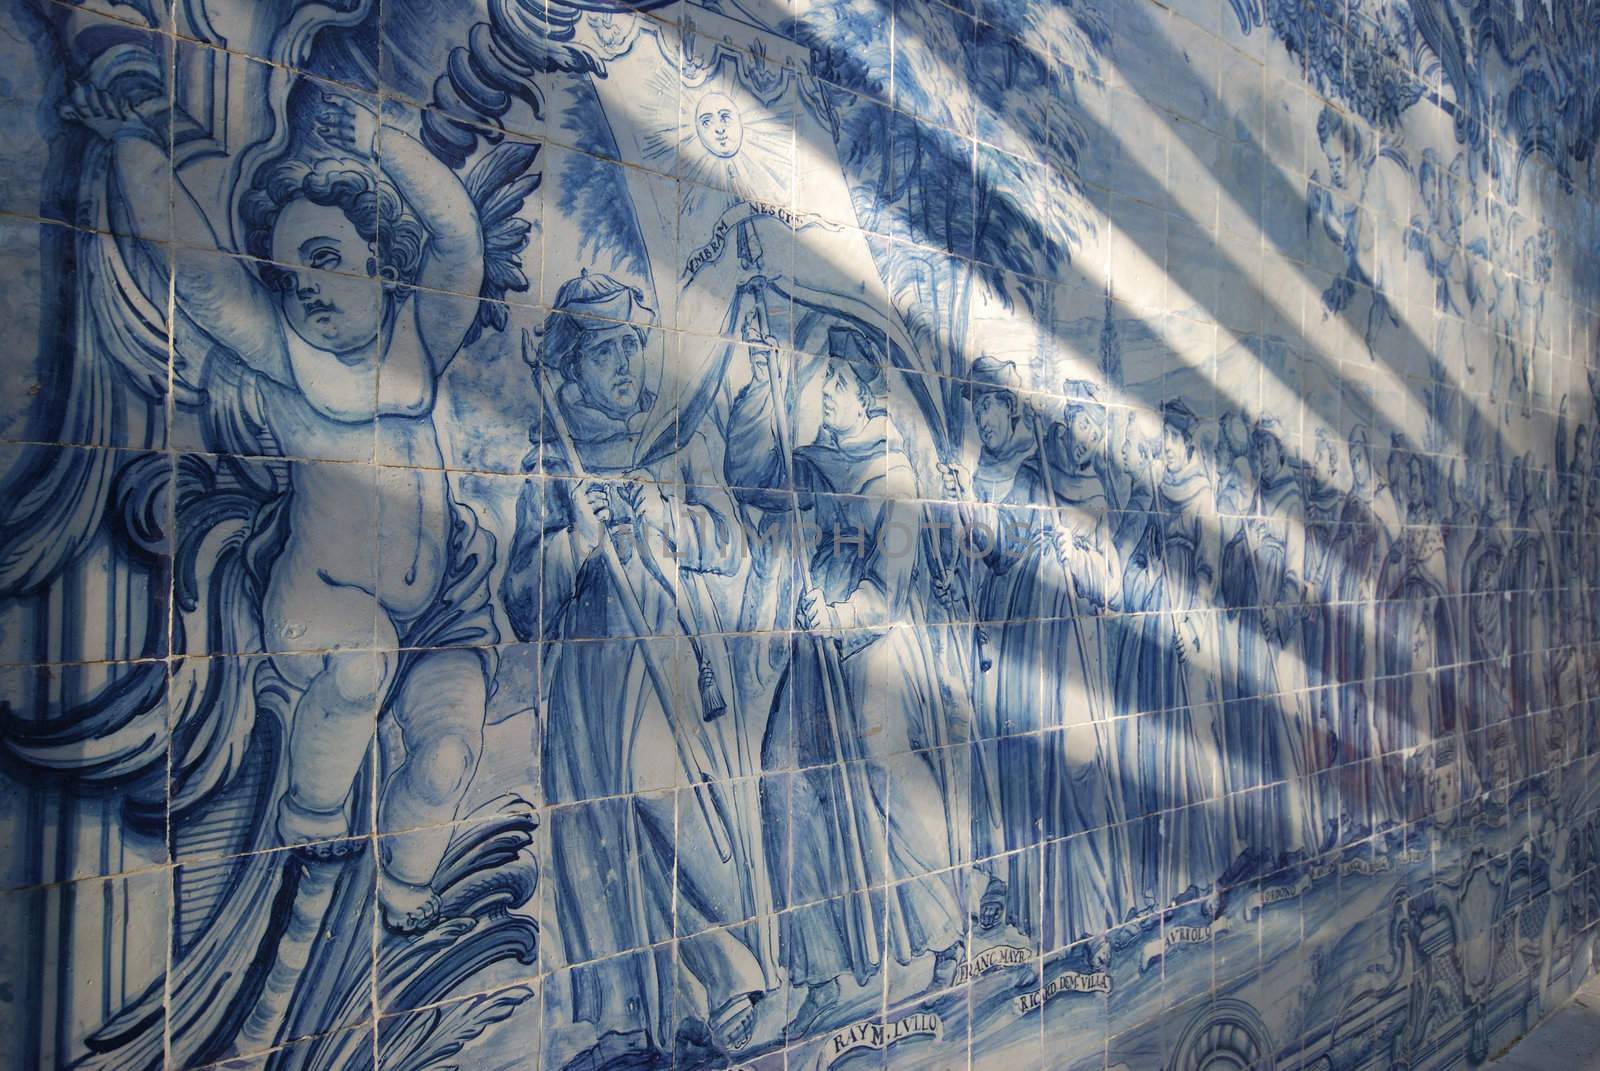 portguese tiles showing a pilgrimage in Cascais